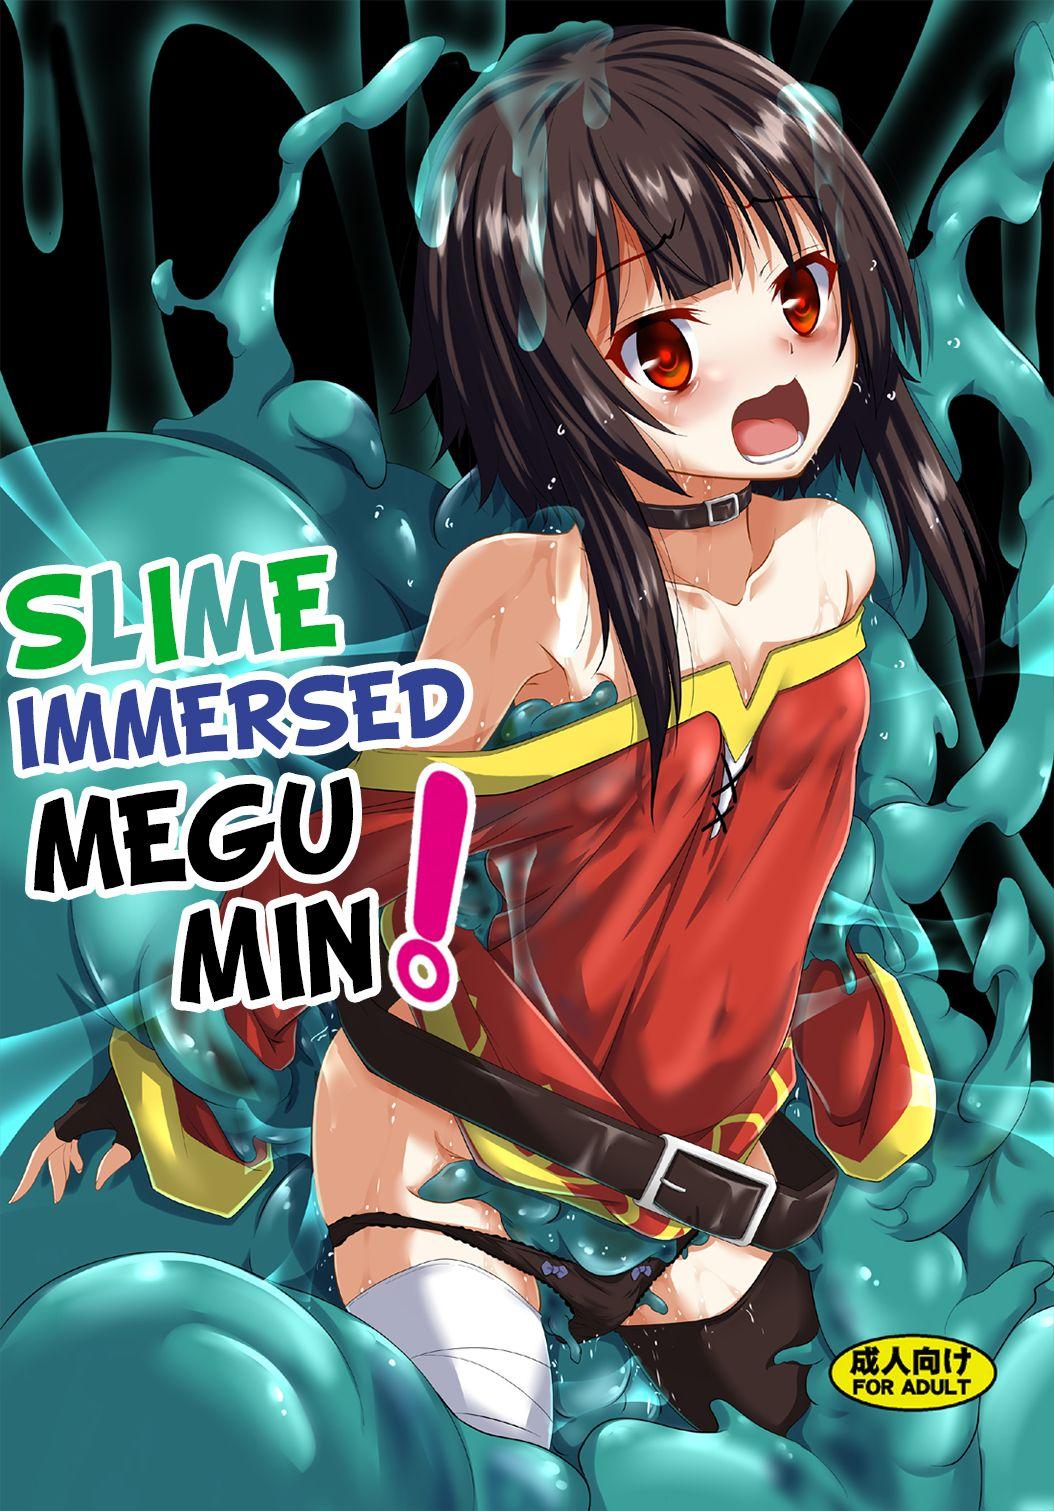 Megumin Slime-zuke! | Slime immersed Megumin! 1